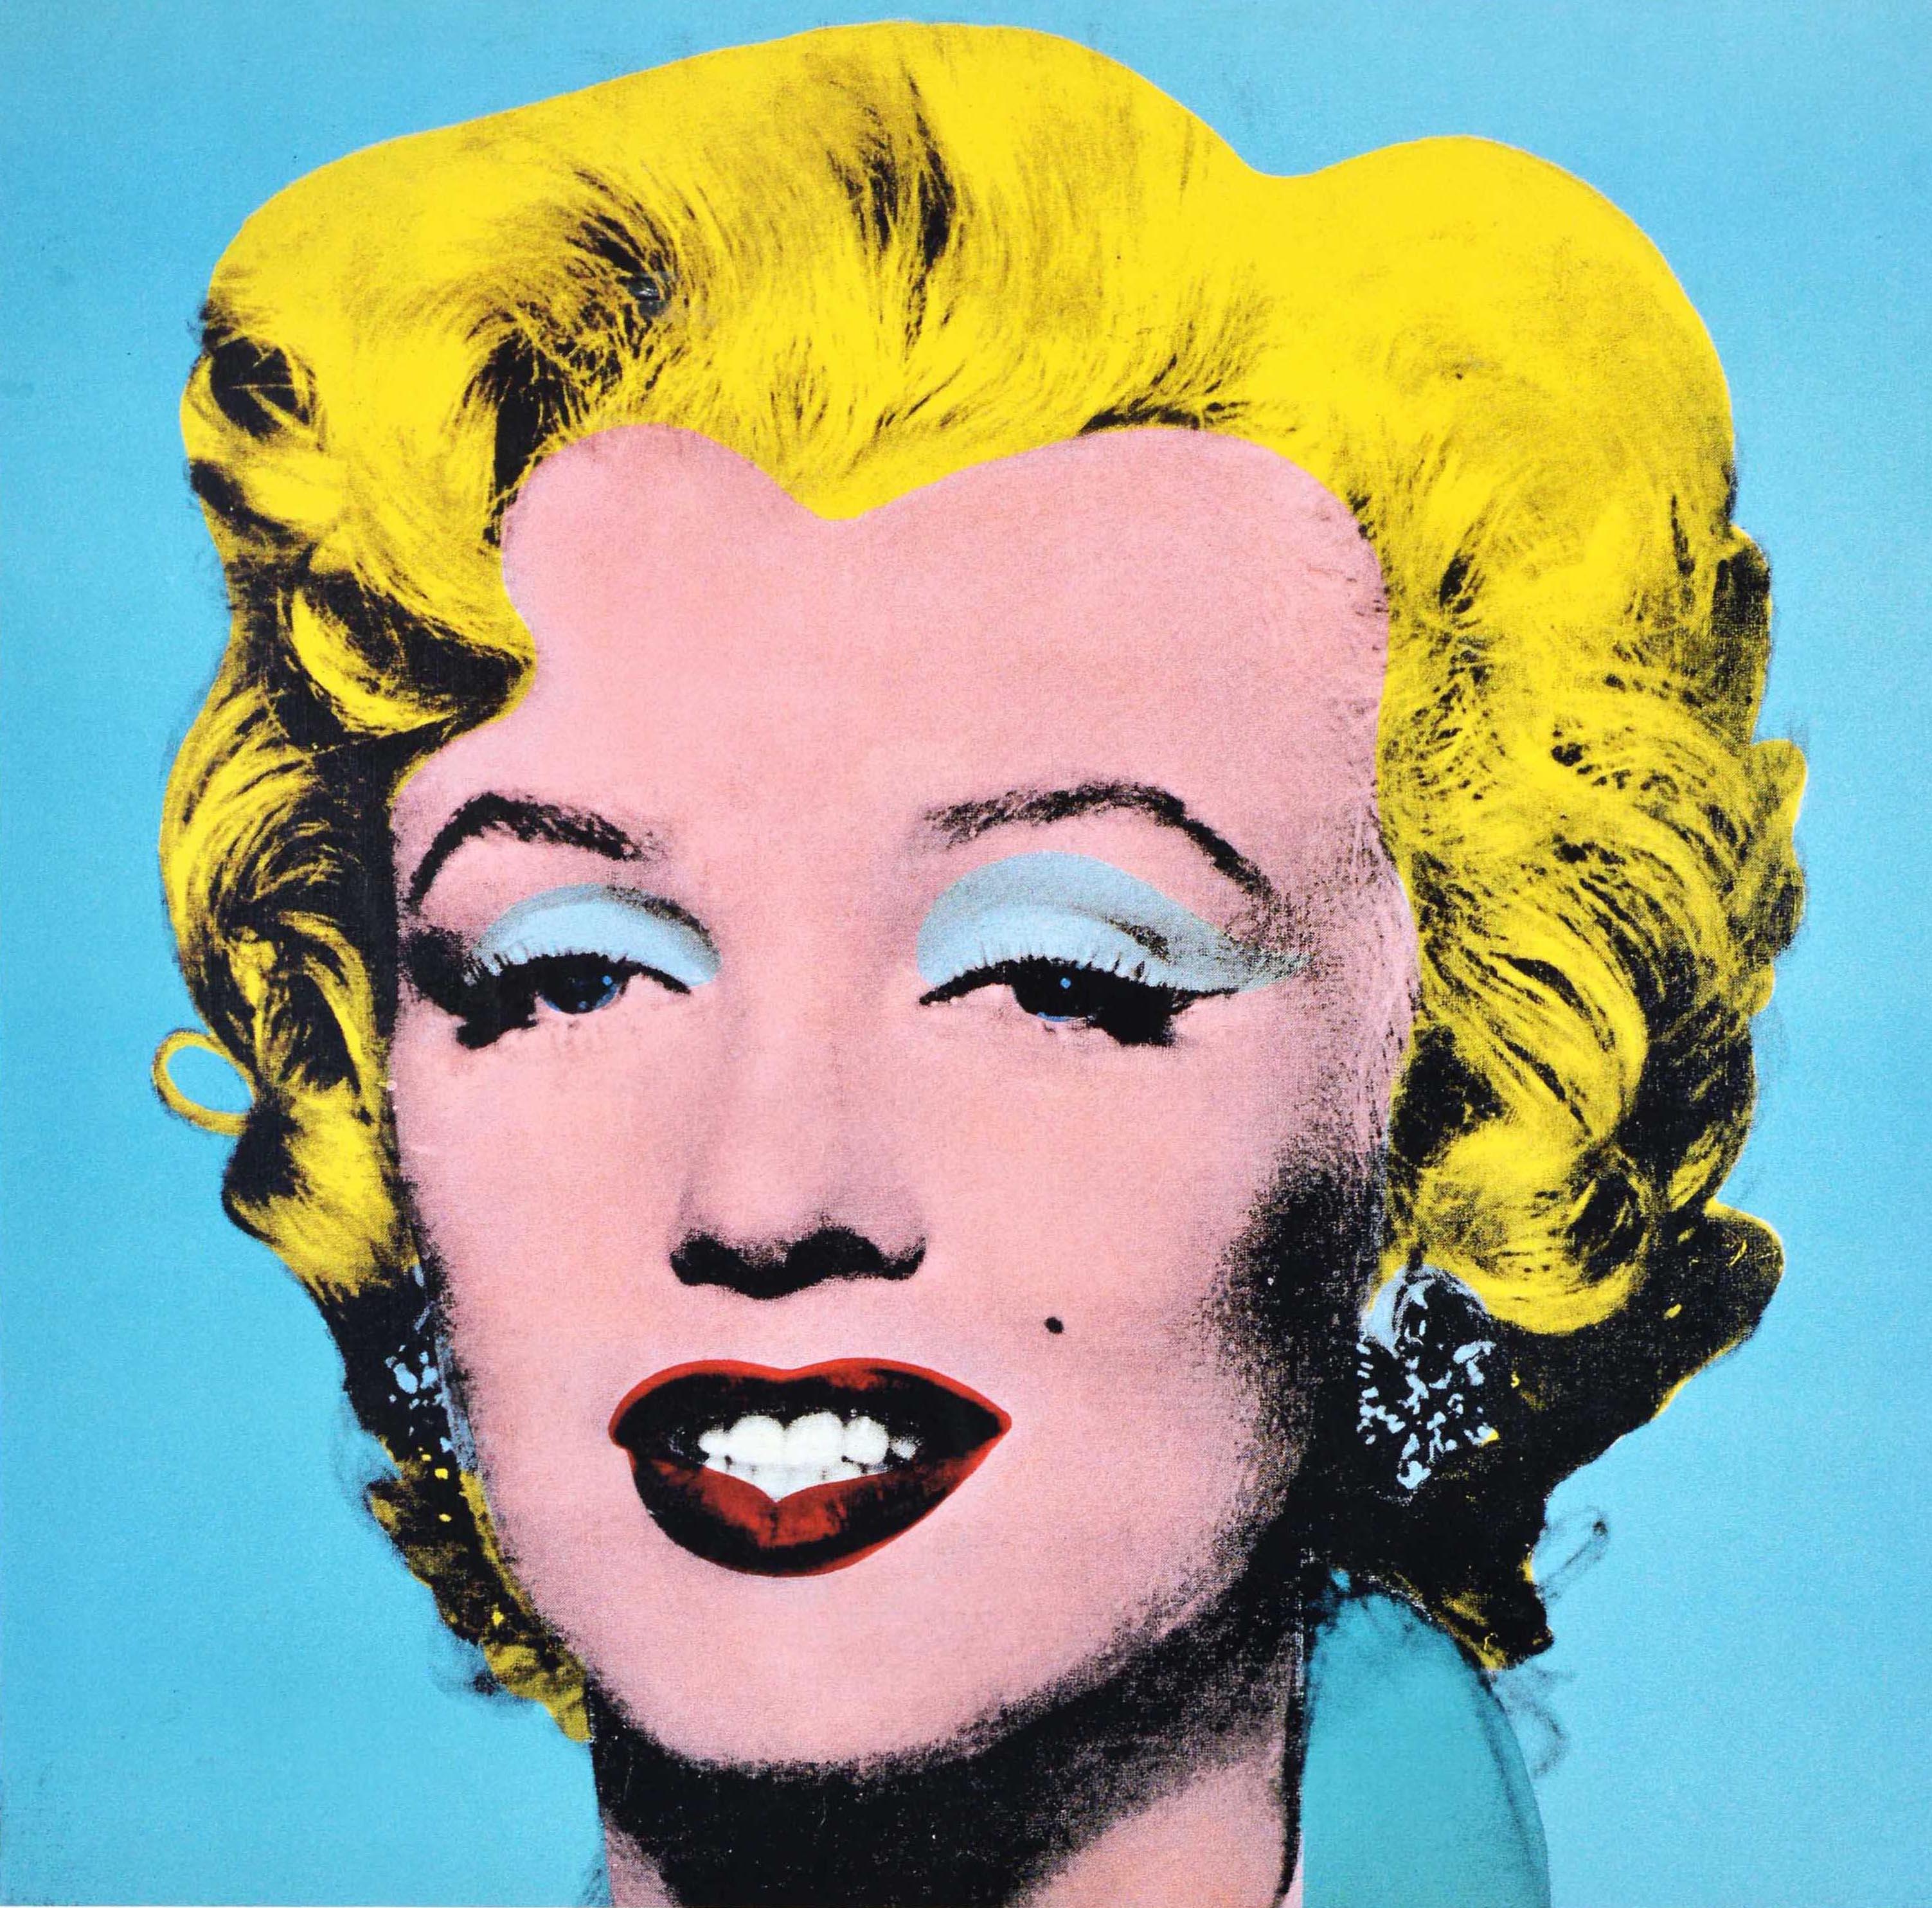 Affiche publicitaire originale d'époque pour l'exposition Andy Warhol Series and Singles à la Fondation Beyeler du 17 septembre au 31 décembre 2000. Cette affiche présente un dessin pop art emblématique du célèbre artiste Andy Warhol (1928-1987)